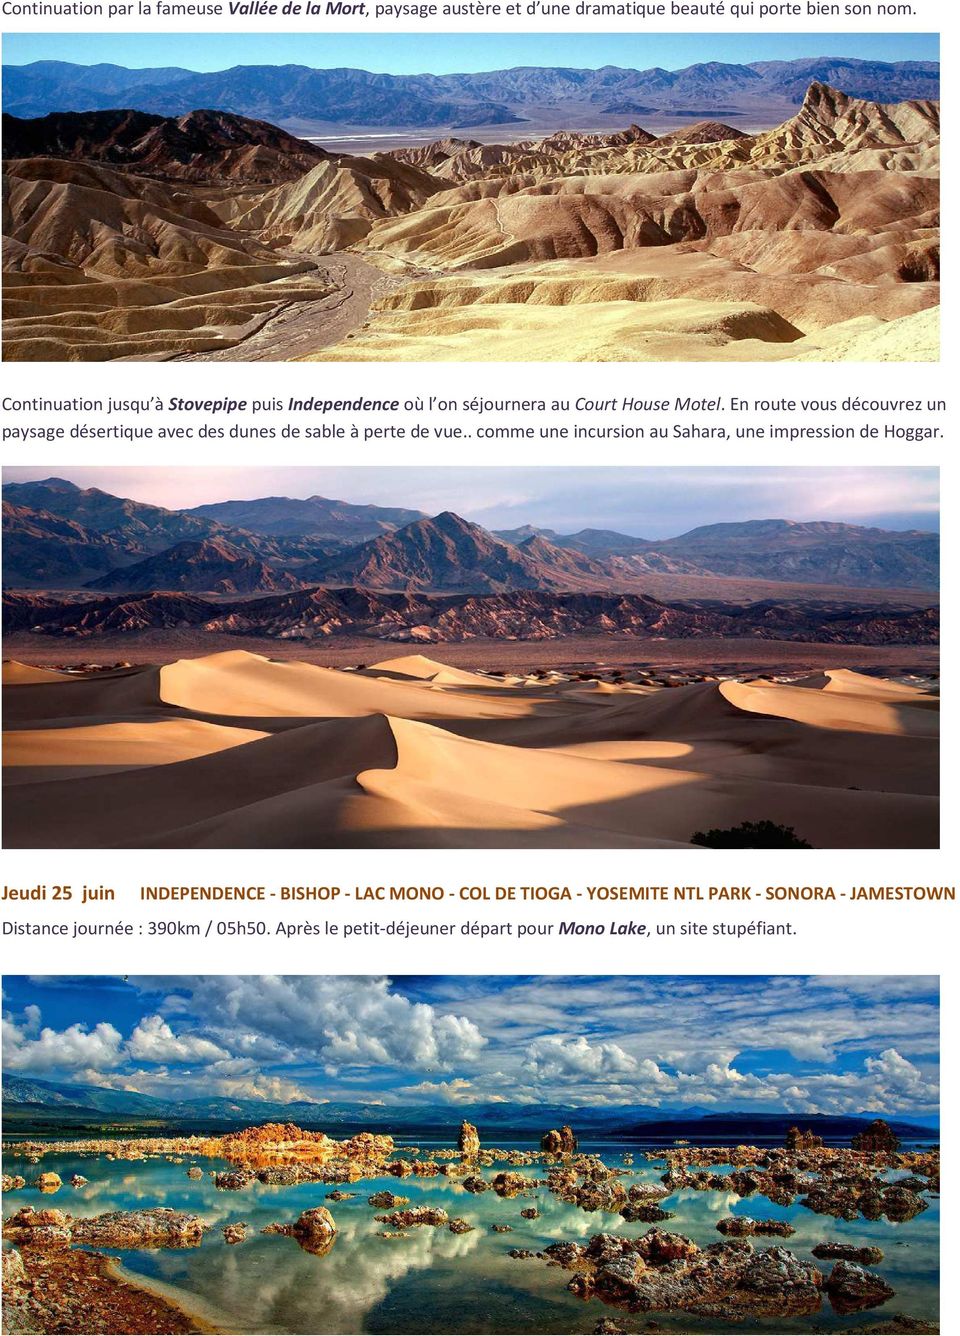 En route vous découvrez un paysage désertique avec des dunes de sable à perte de vue.